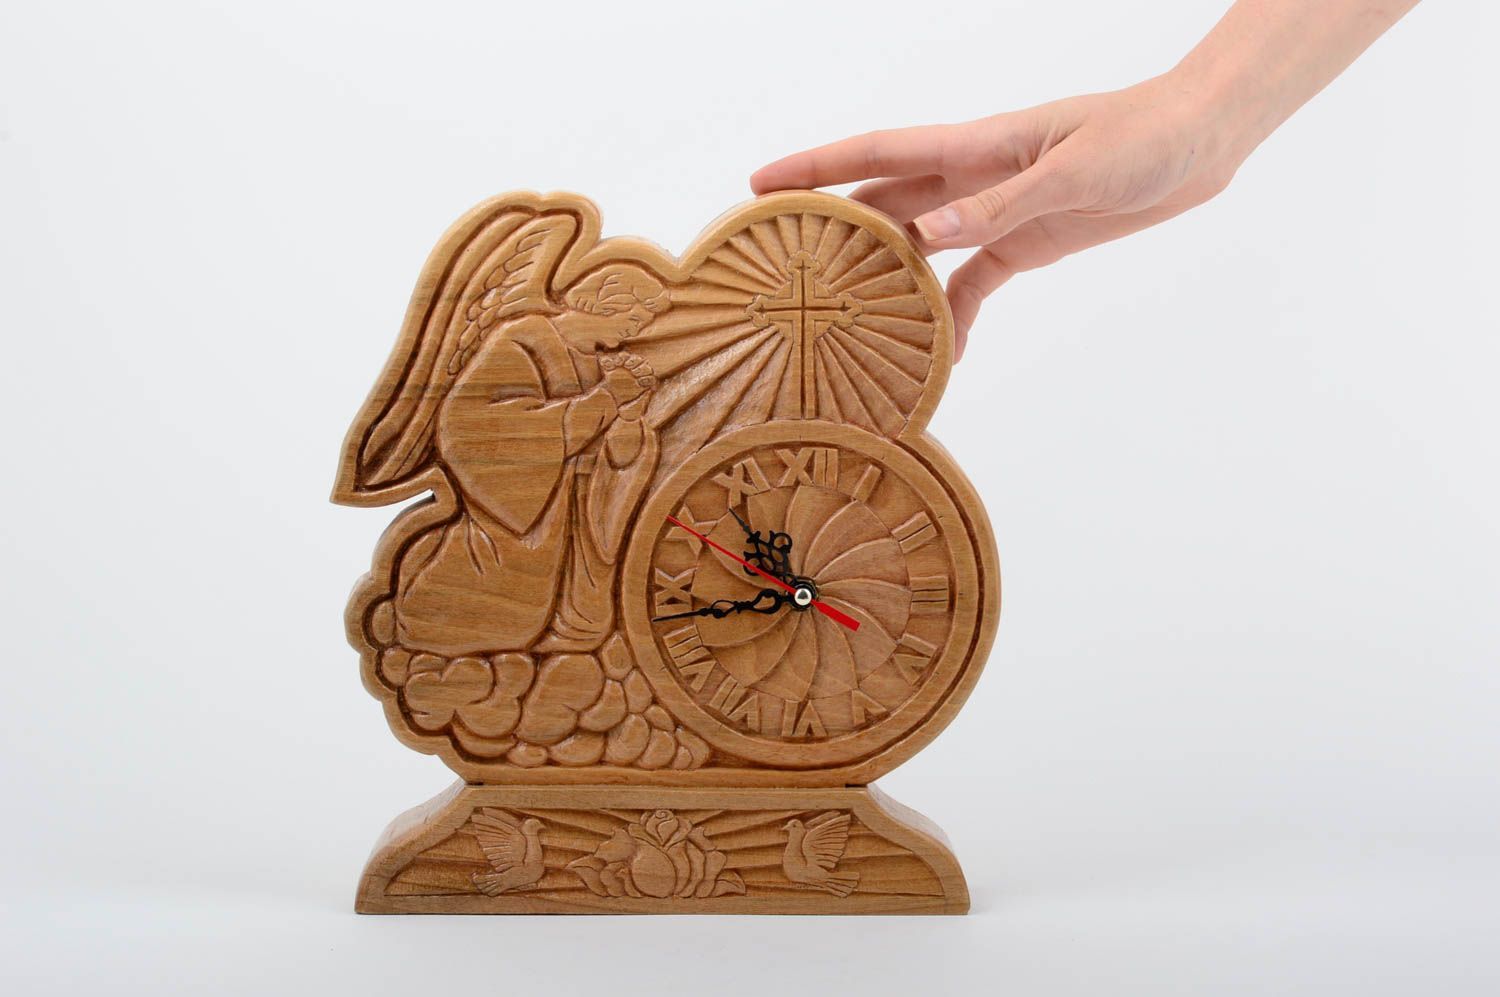 Tisch Uhr Handmade Deko Uhr aus Holz ungewöhnliche Uhr Engel geschnitzt schön foto 5